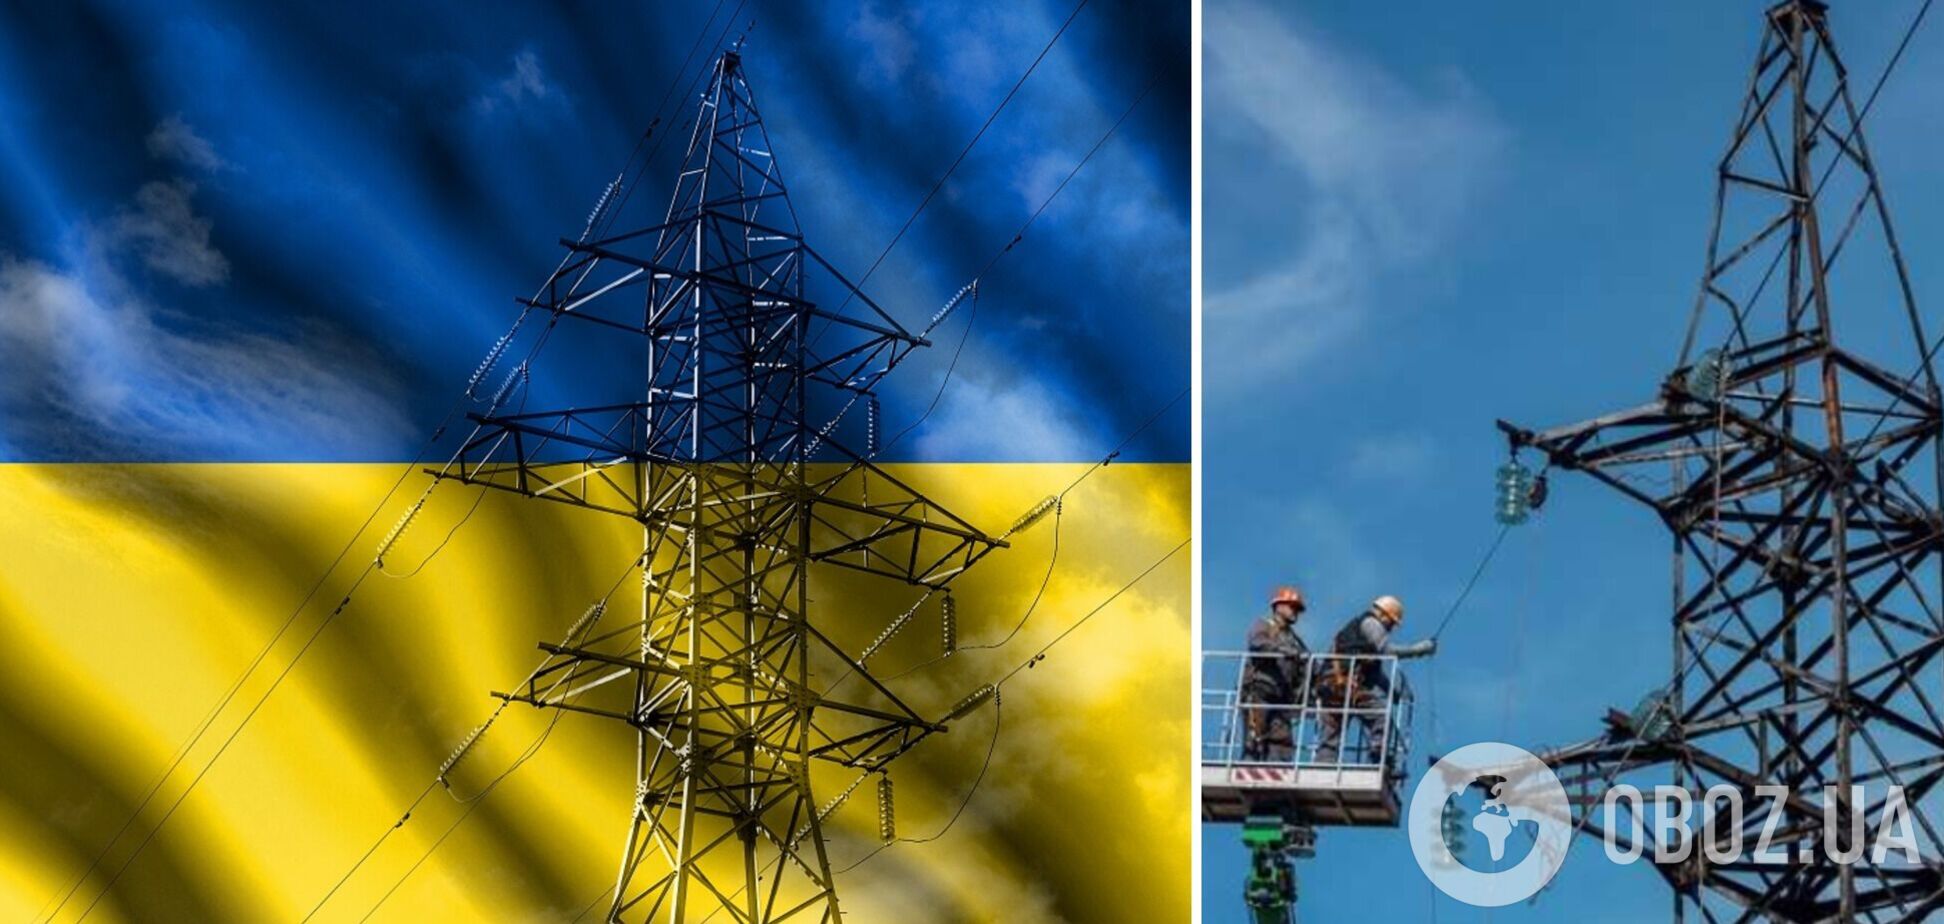 Украина заканчивает отопительный сезон с профицитом газа и угля – министр энергетики